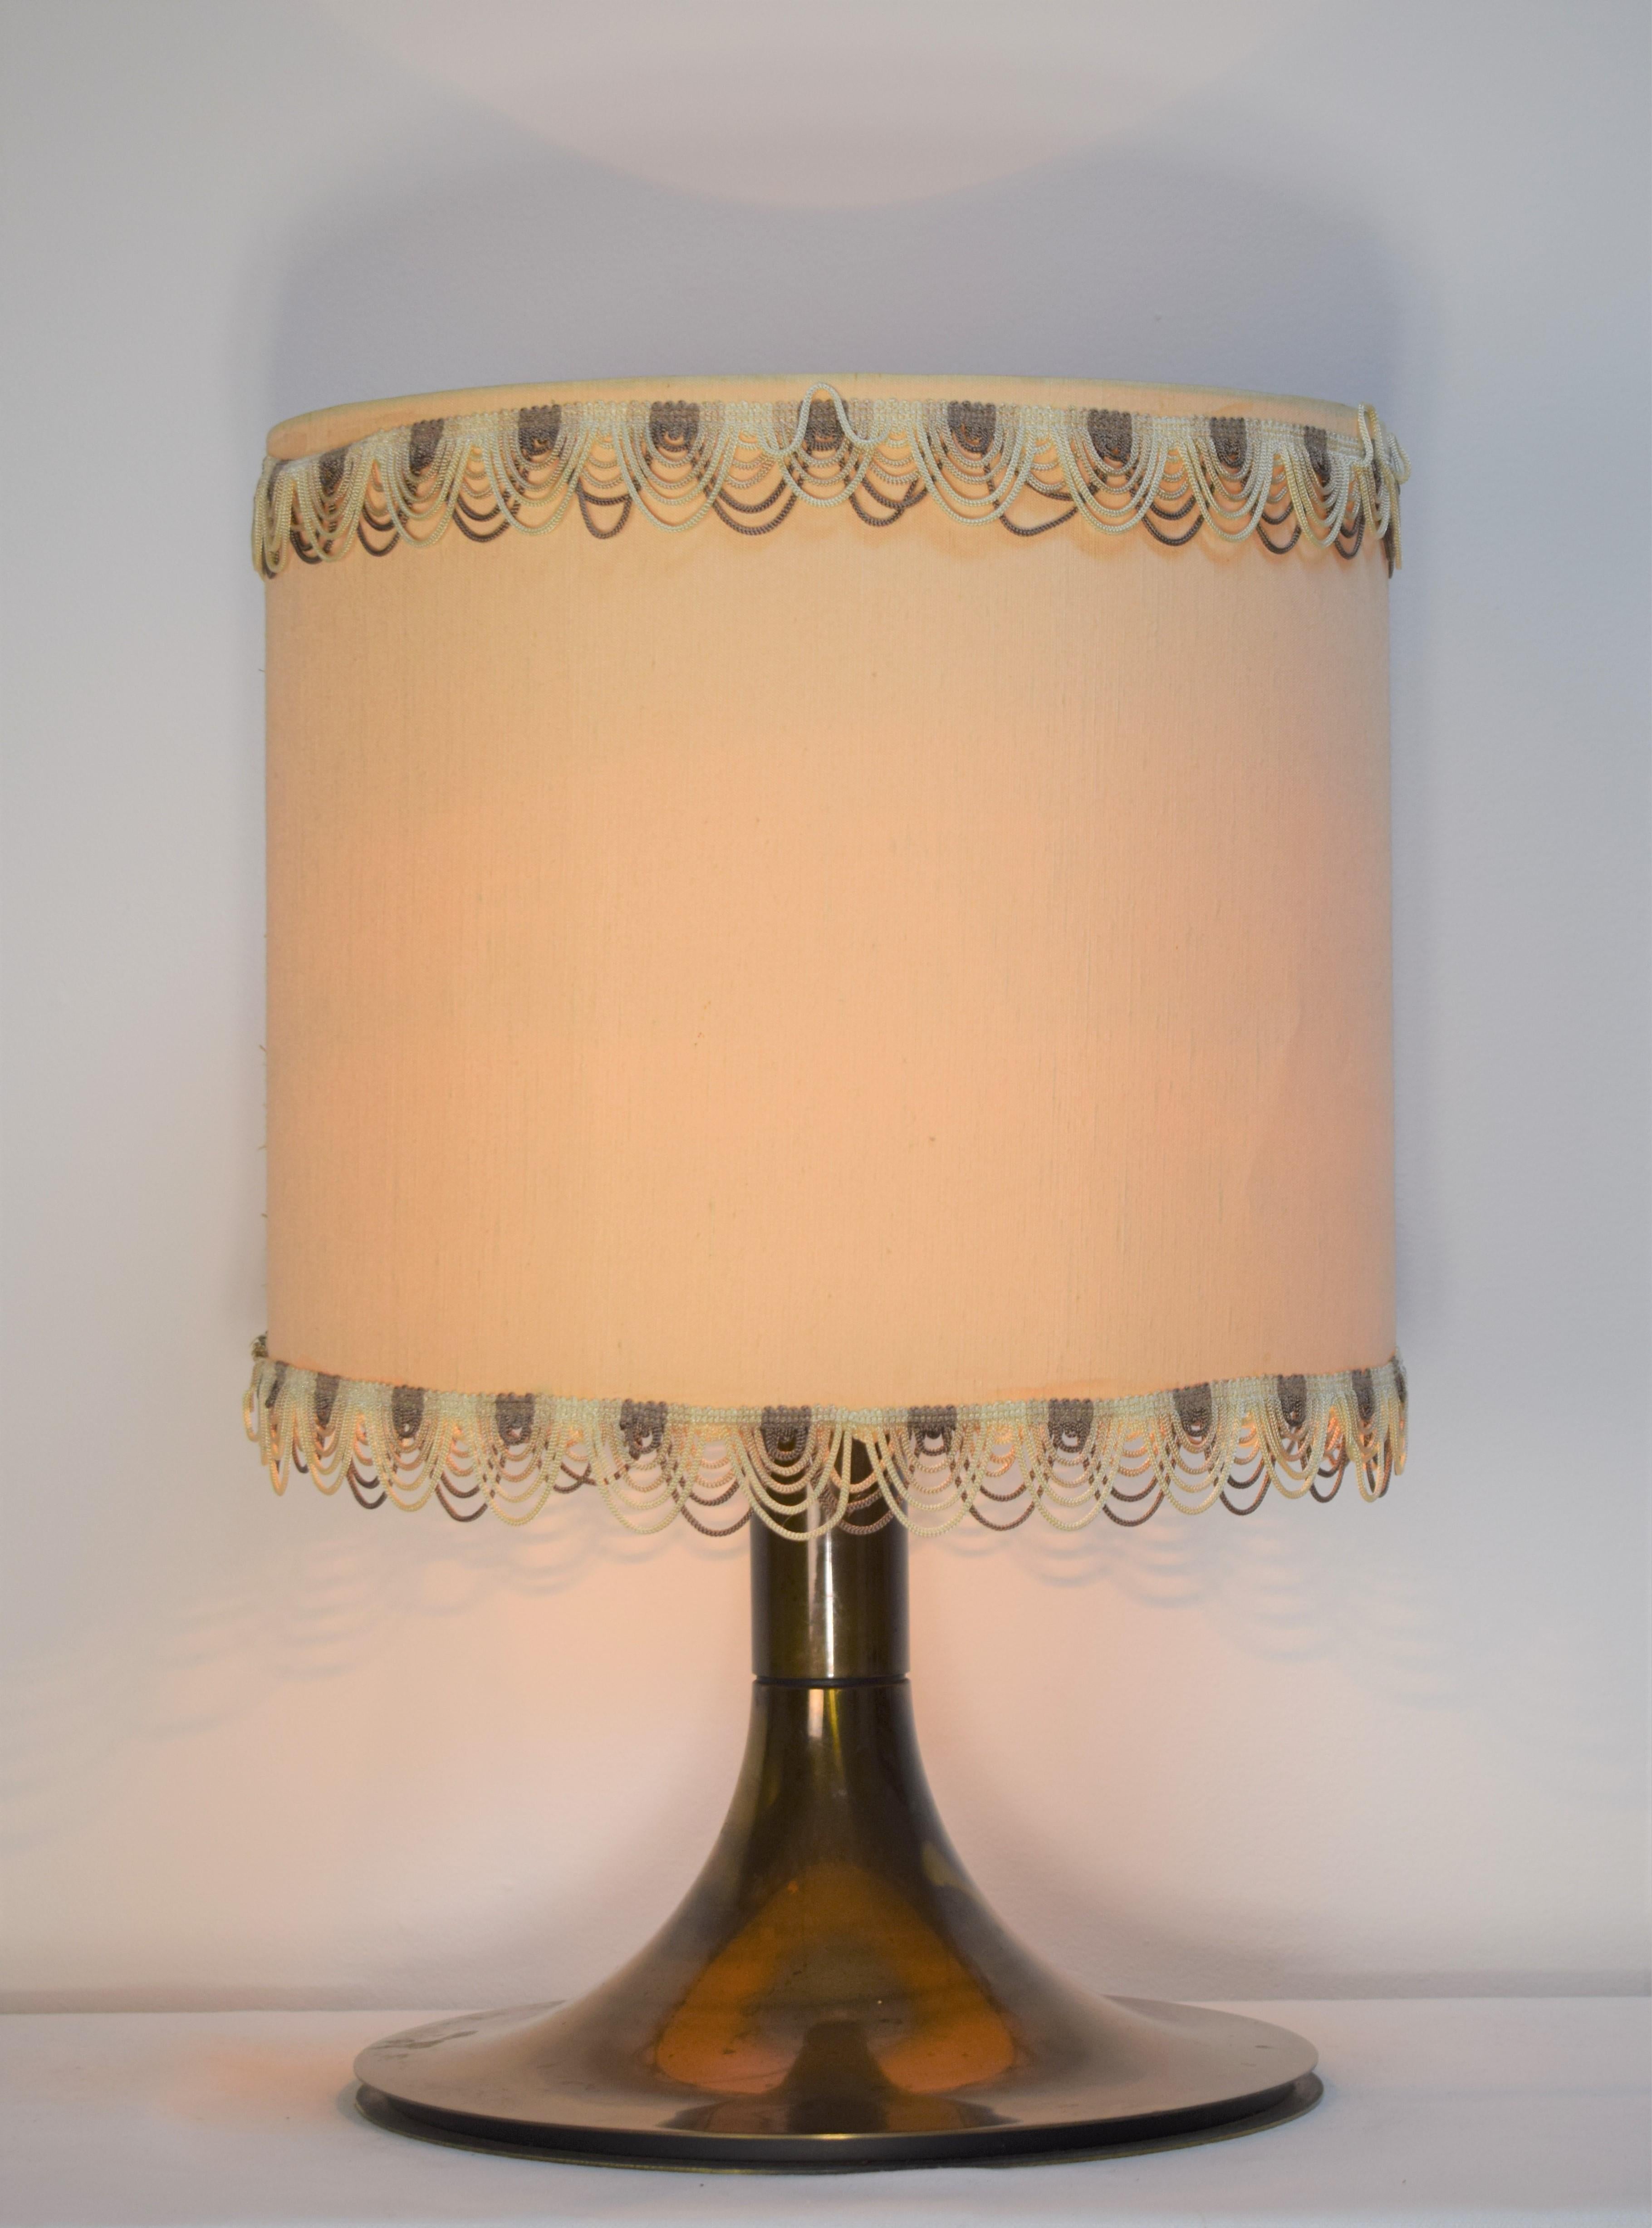 Lampe de table italienne en laiton, années 1960.

Dimensions : H= 50 cm ; D=35cm.